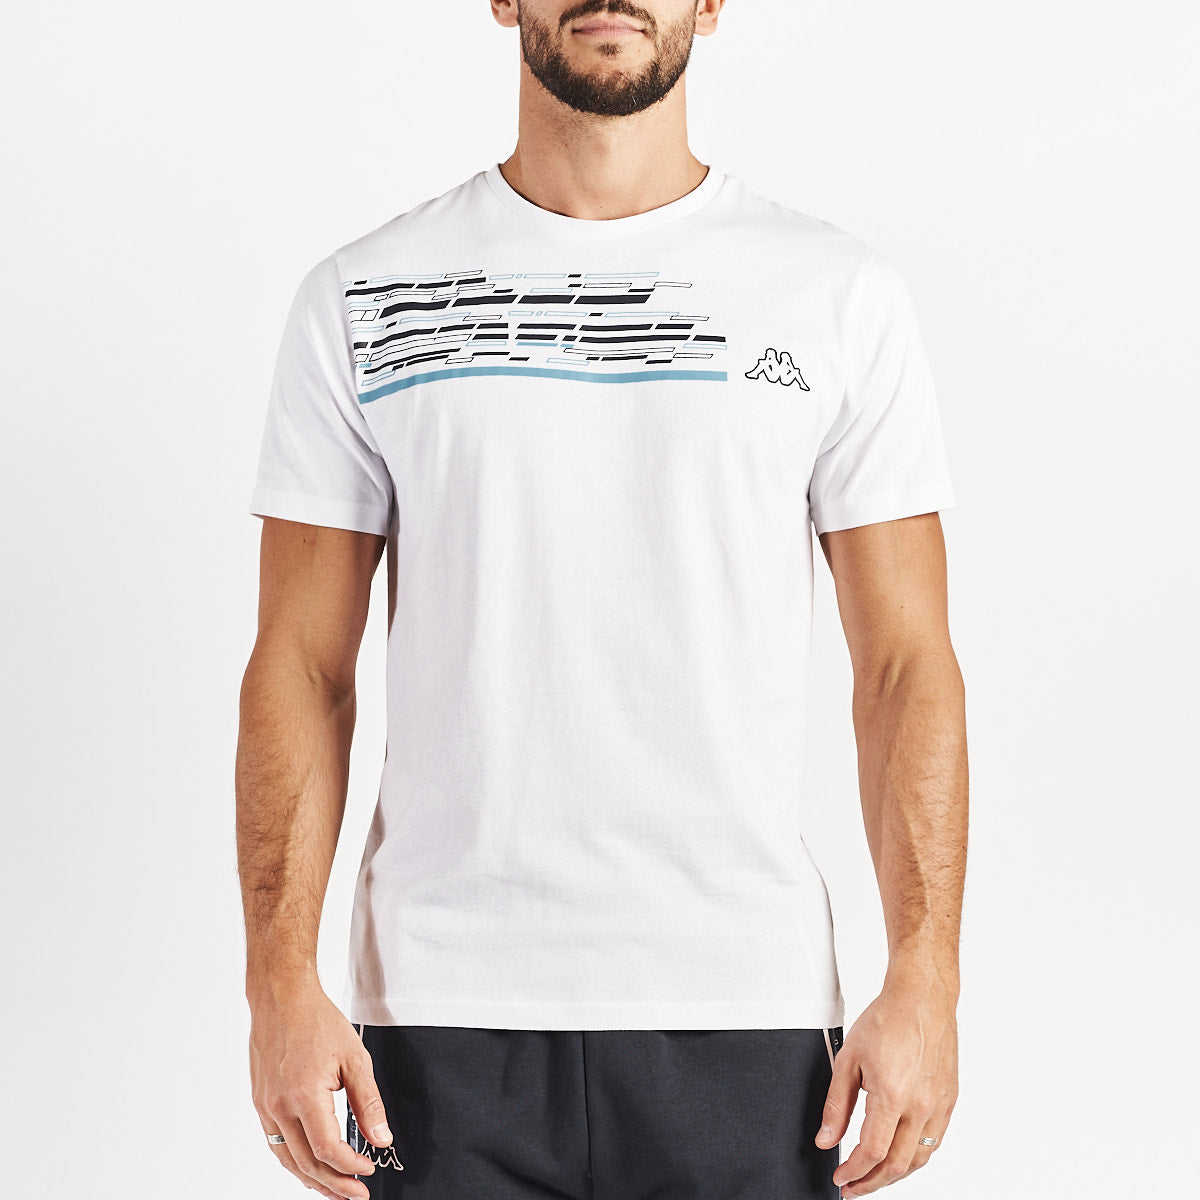 T-shirt Godot Blanc Homme - Image 1